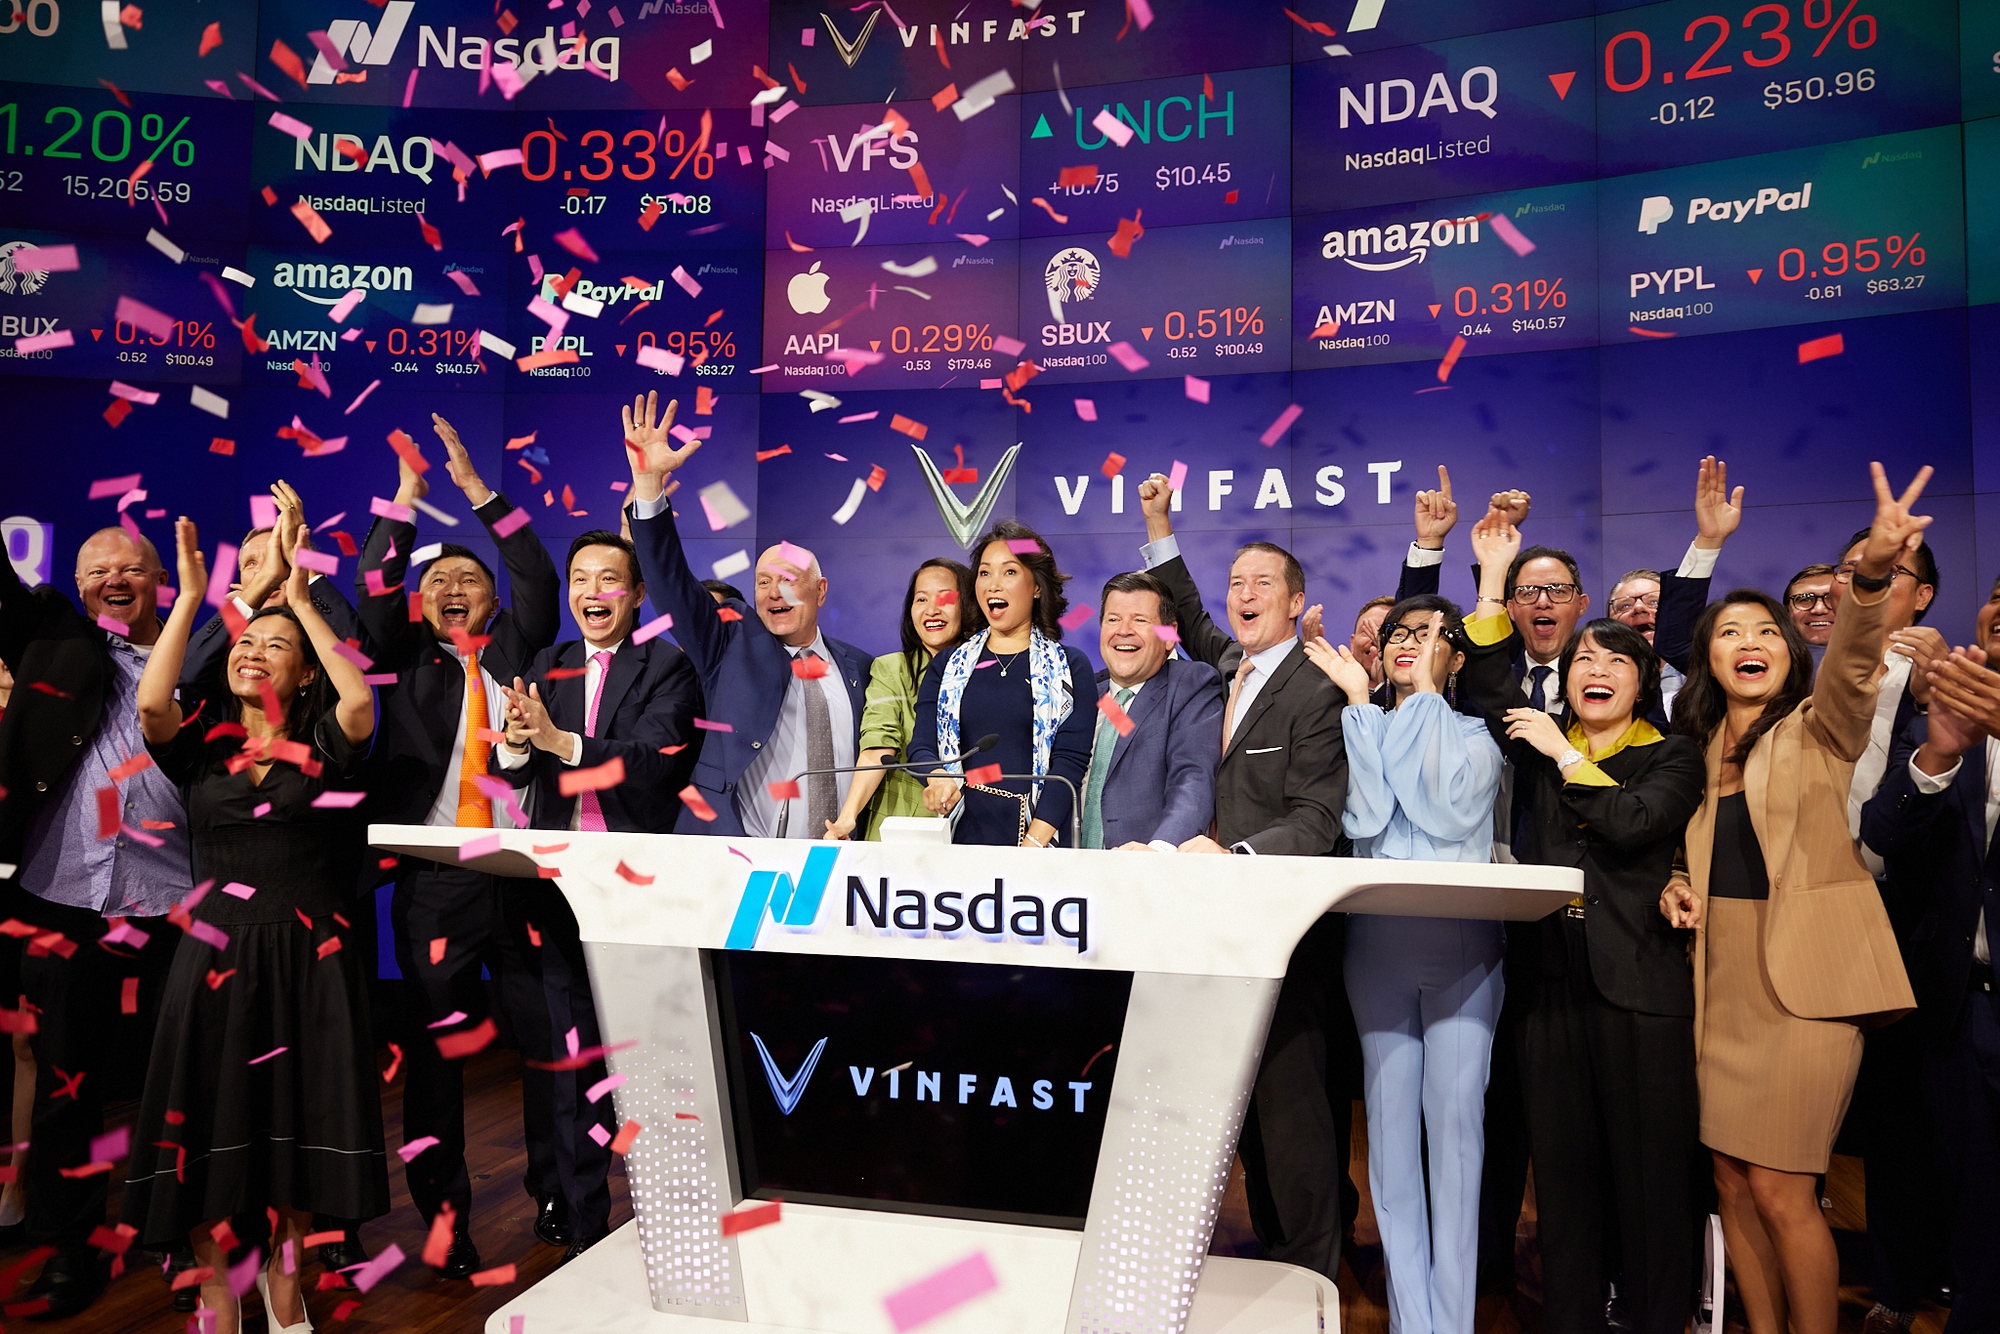 Thêm CEO của VinFast là nữ, ông Phạm Nhật Vượng tin tưởng nữ tướng hơn - Ảnh 2.